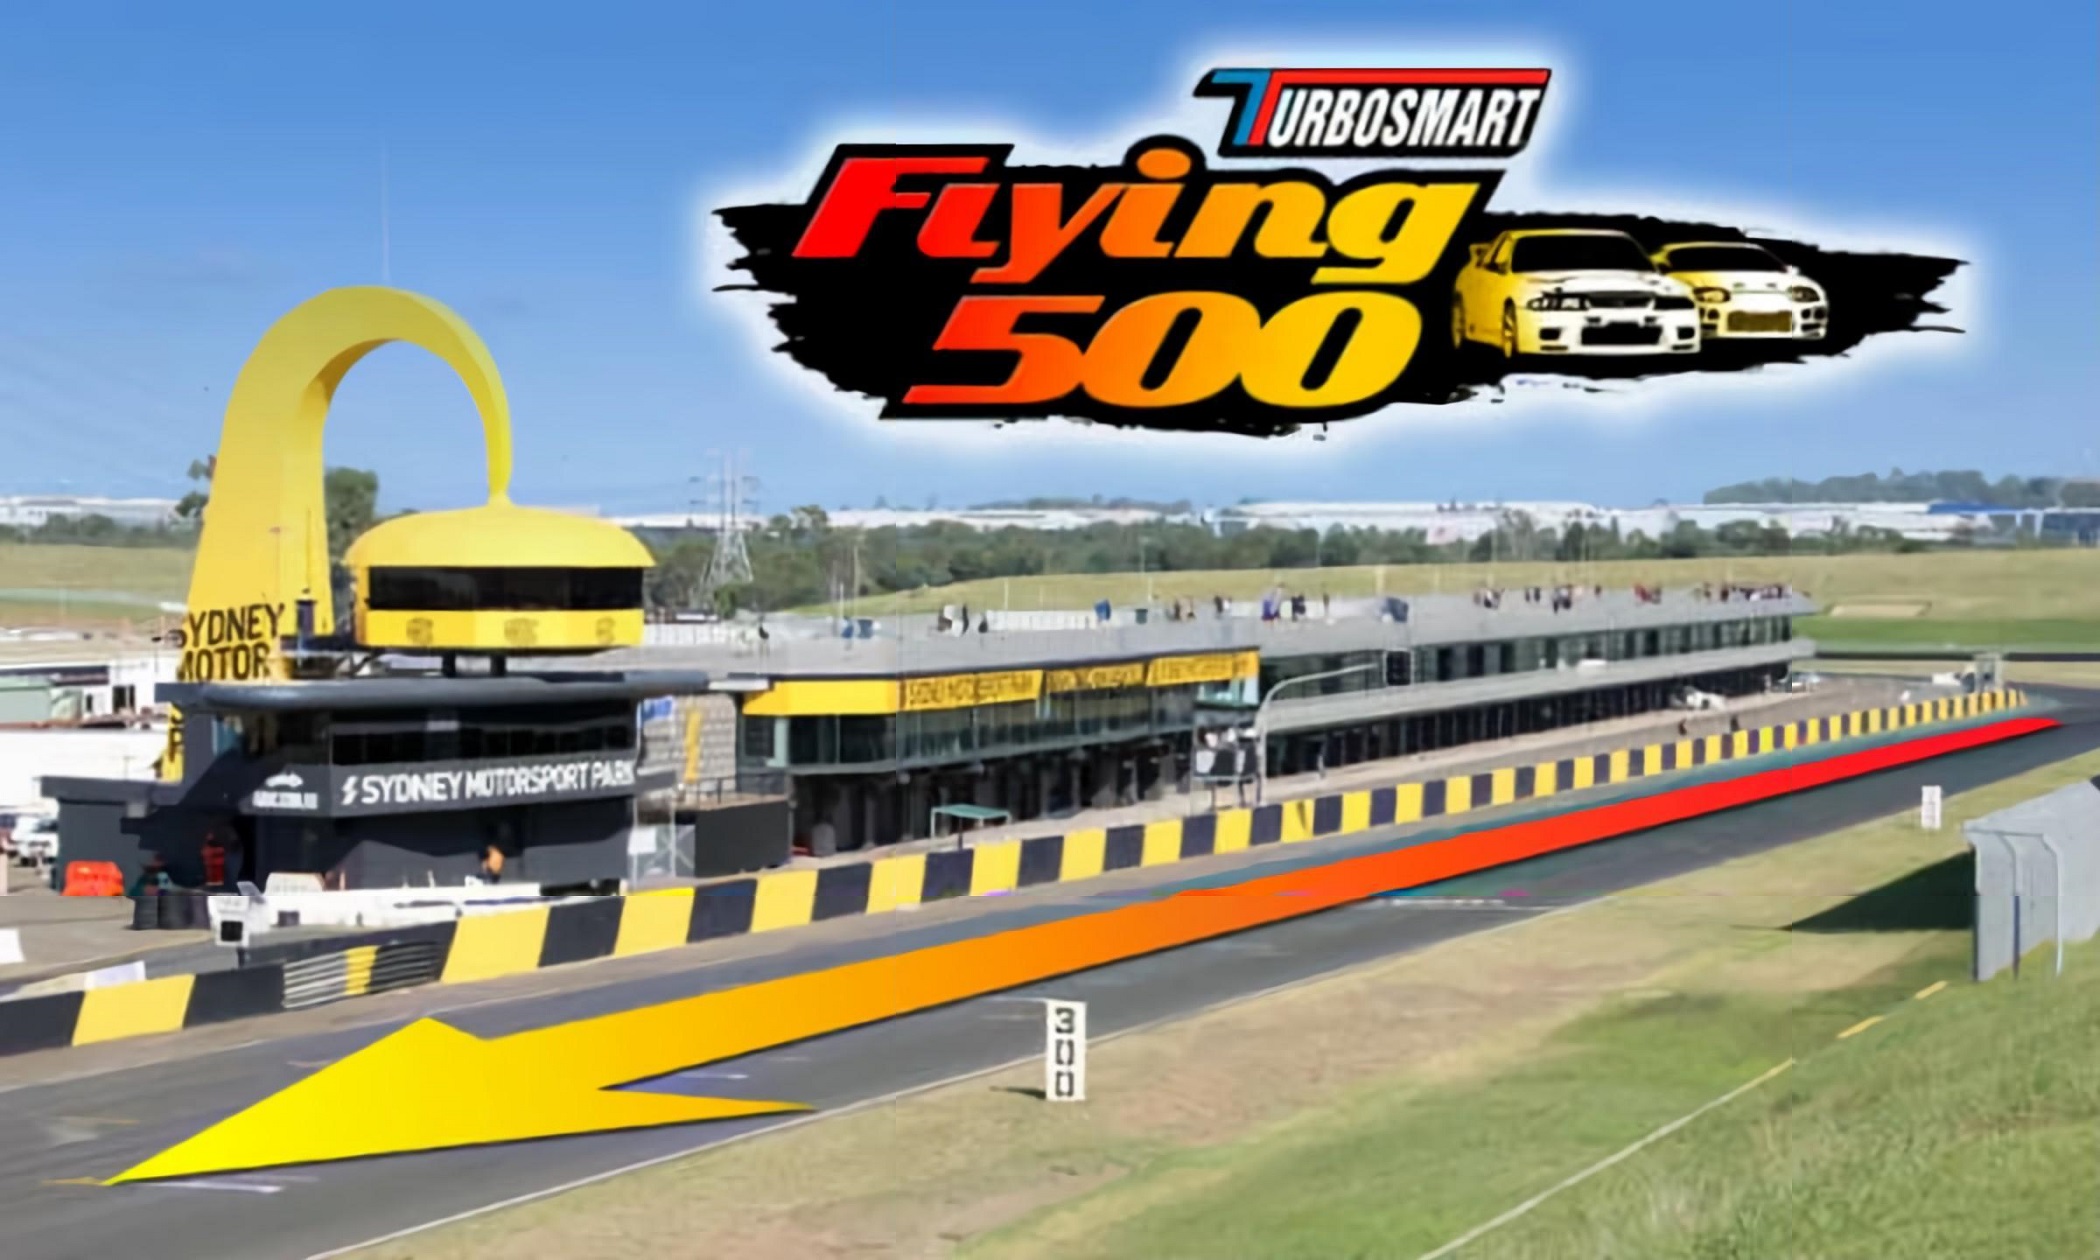 TurboSmart Flying 500